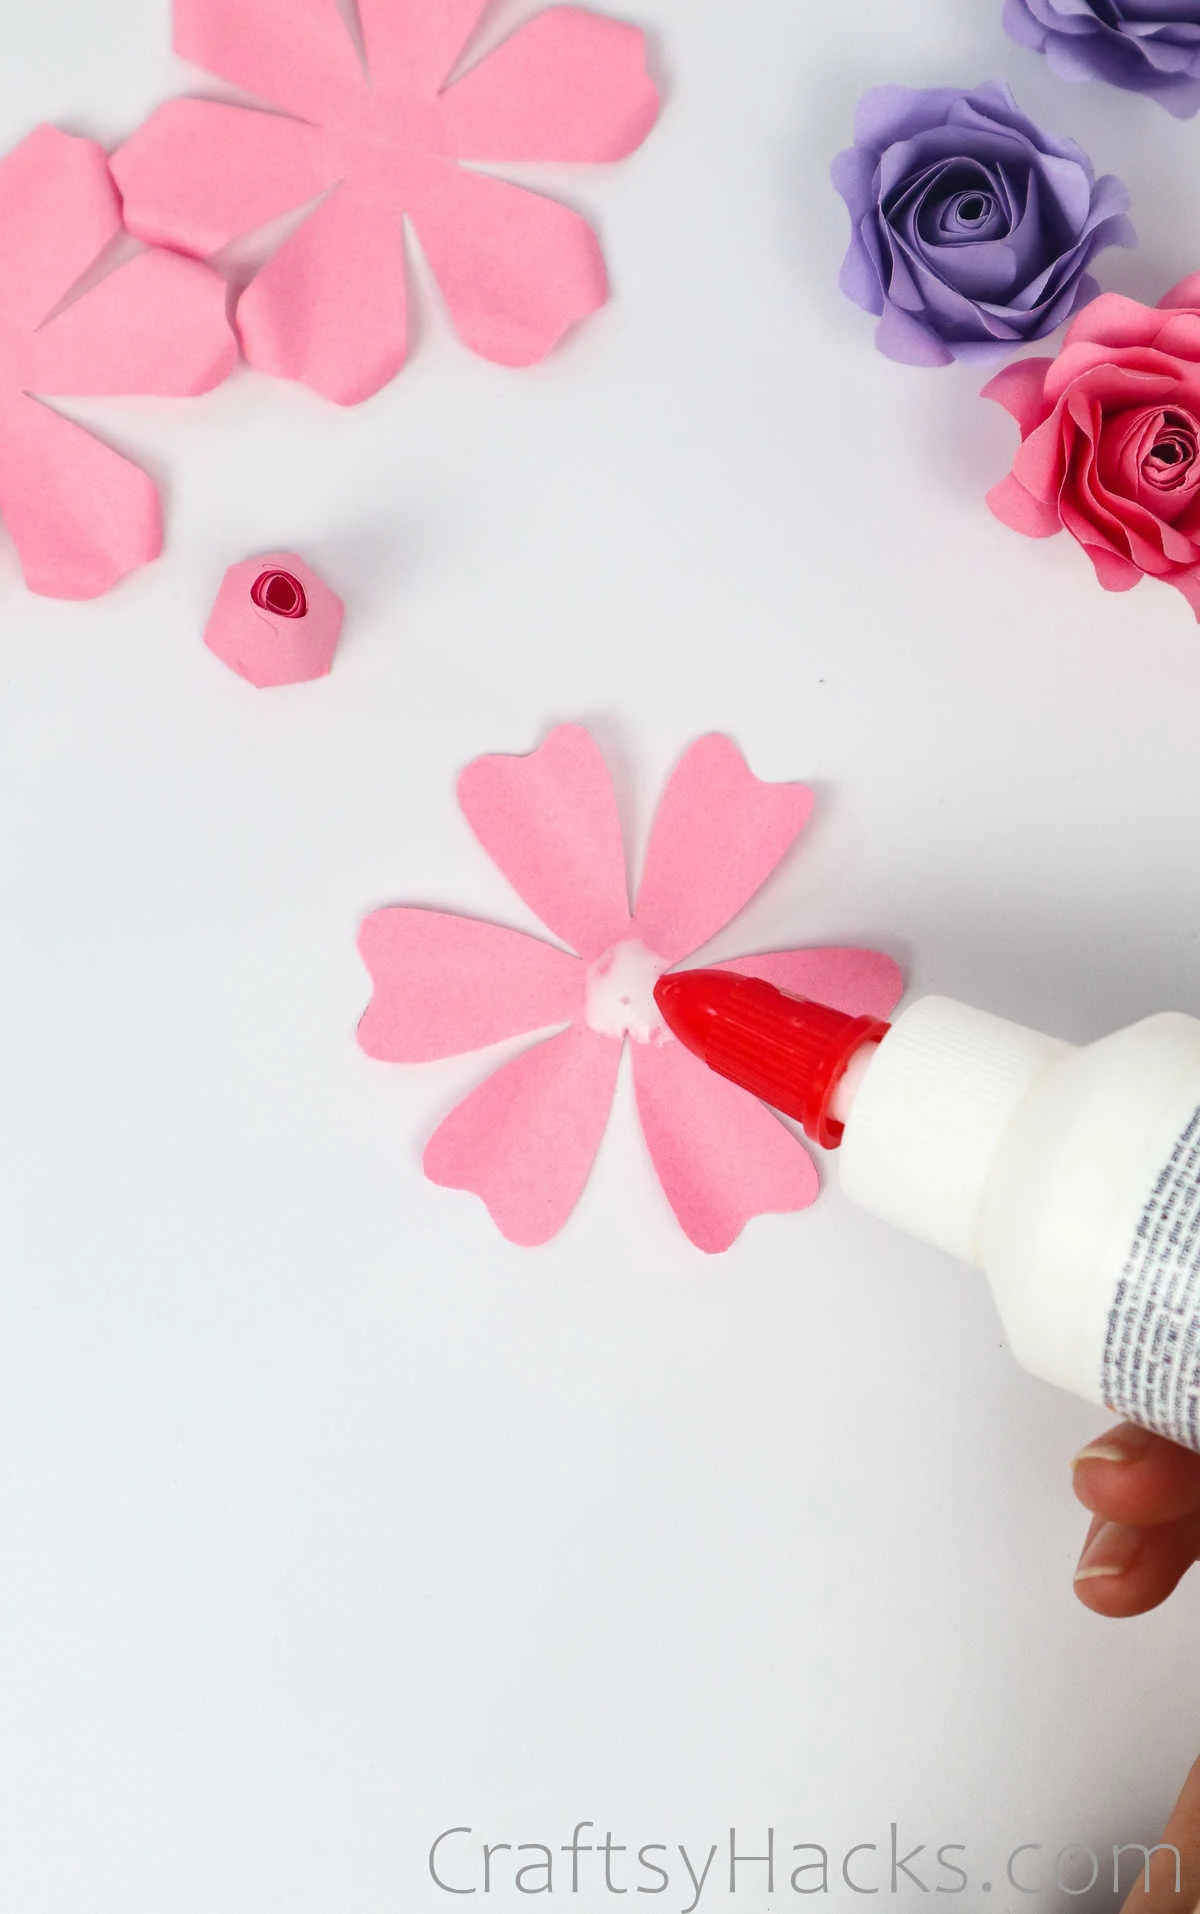 glue in center of petals